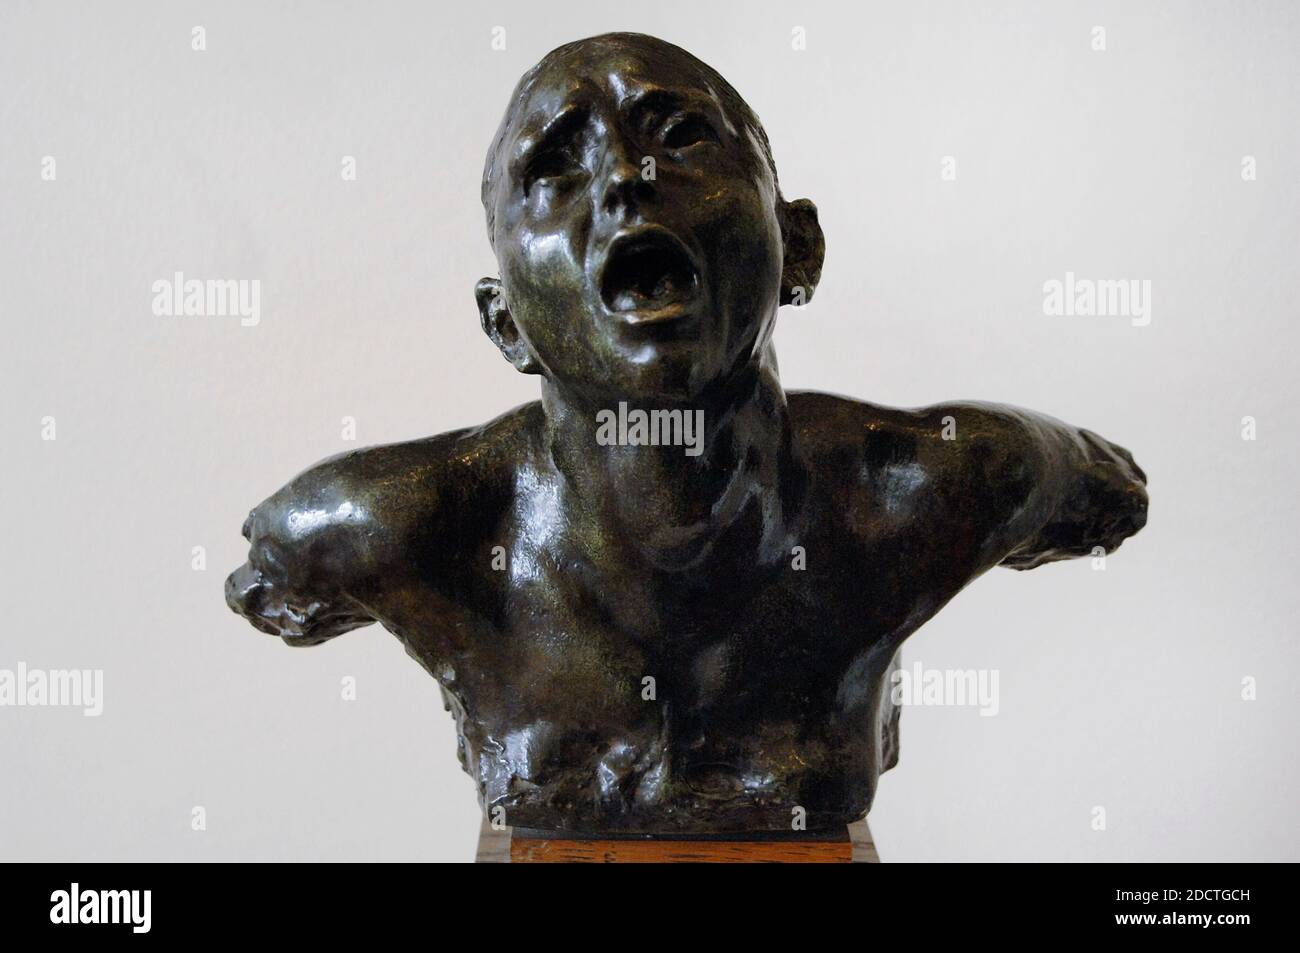 Auguste Rodin (1840-1917). Sculpteur français. Le Cry, vers 1886. Bronze. La fonderie Georges Rudier. Musée Rodin. Paris. France. Banque D'Images